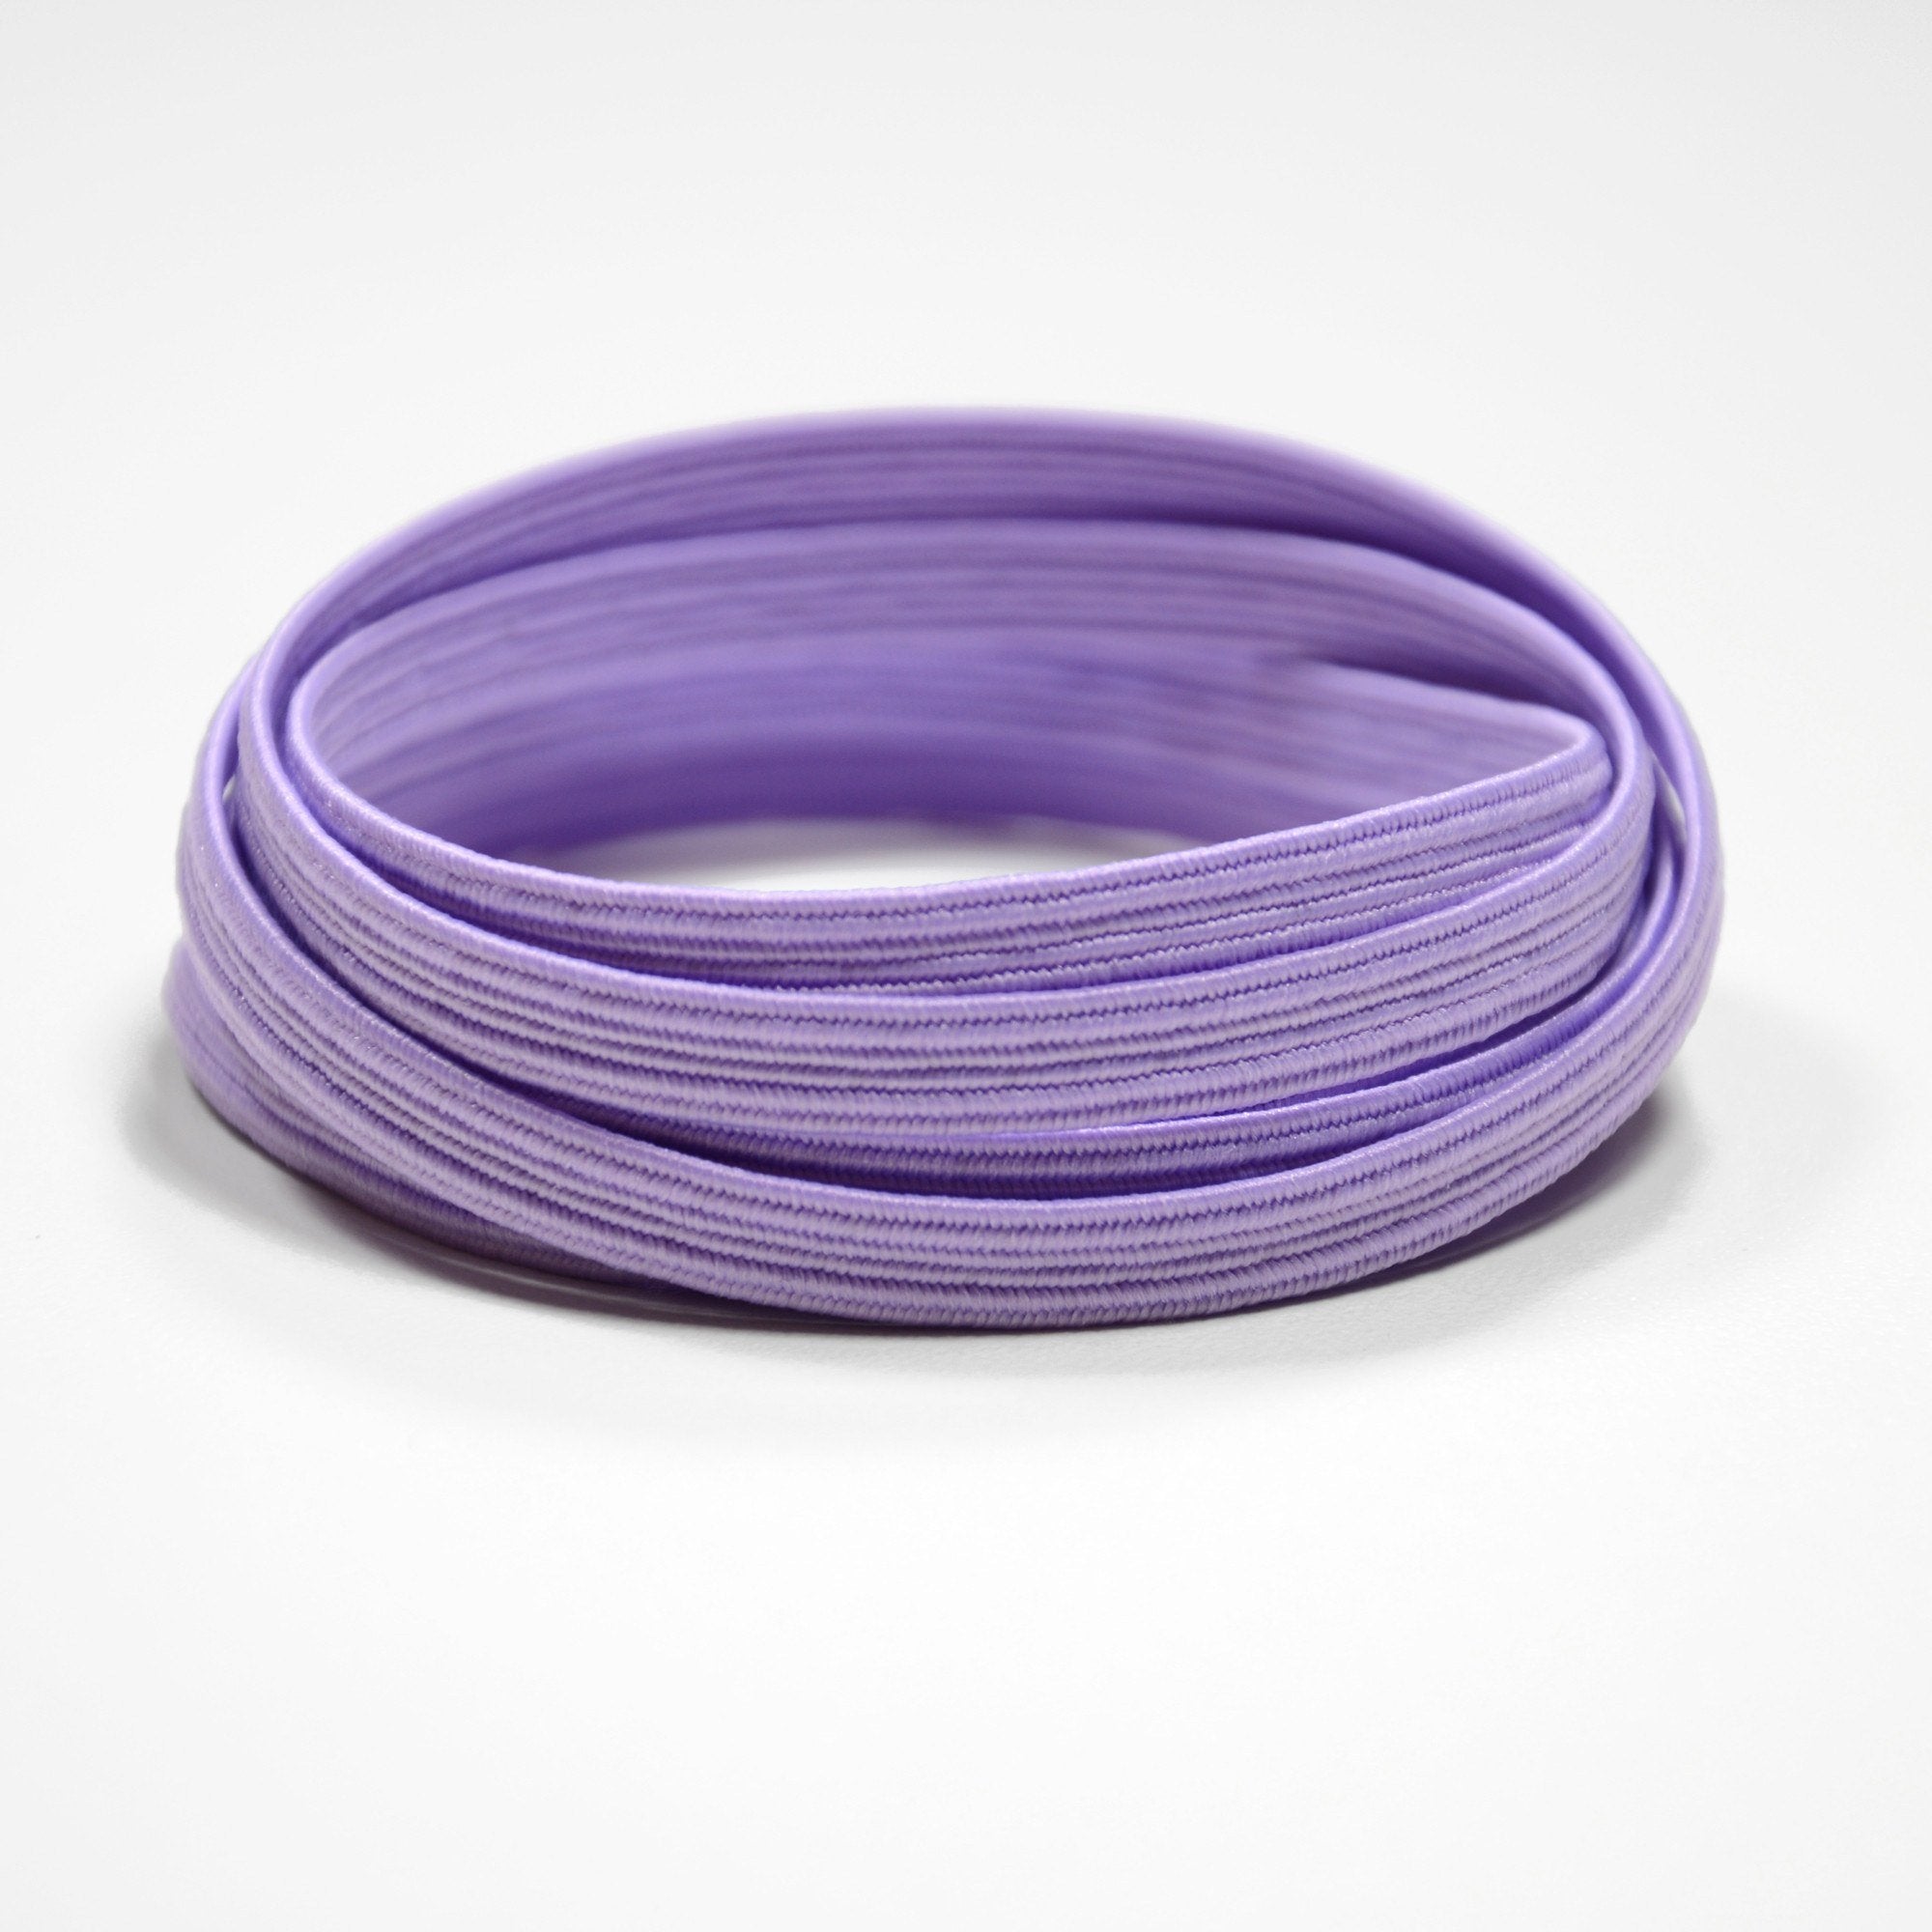 XPand Original No-Tie Shoe Laces (Pastel Purple)